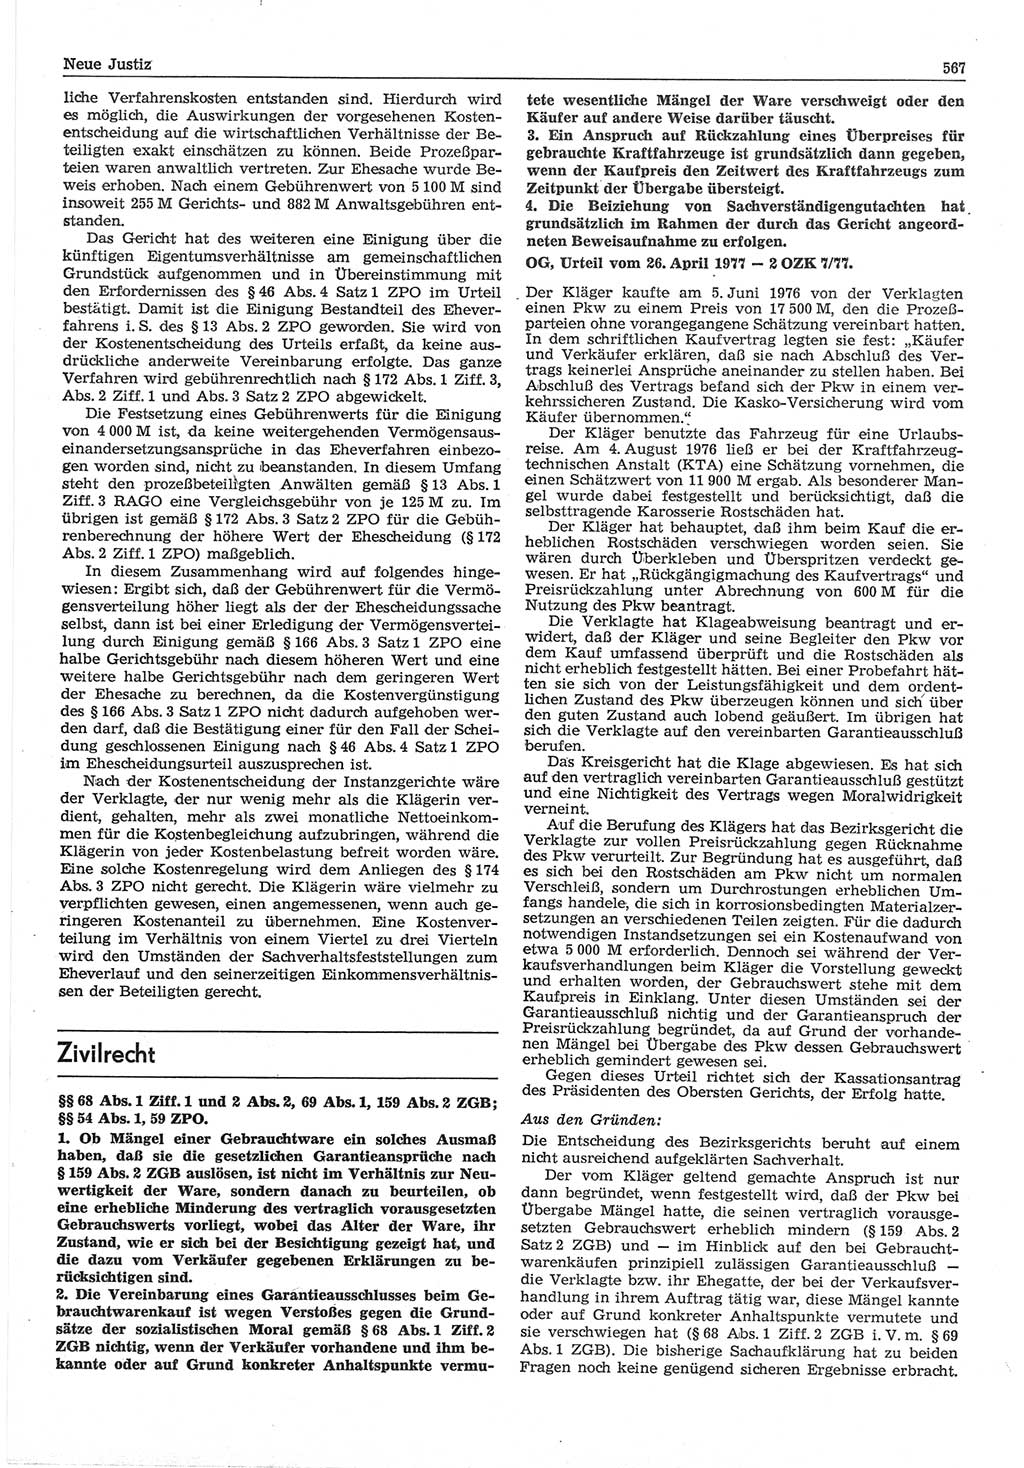 Neue Justiz (NJ), Zeitschrift für Recht und Rechtswissenschaft-Zeitschrift, sozialistisches Recht und Gesetzlichkeit, 31. Jahrgang 1977, Seite 567 (NJ DDR 1977, S. 567)